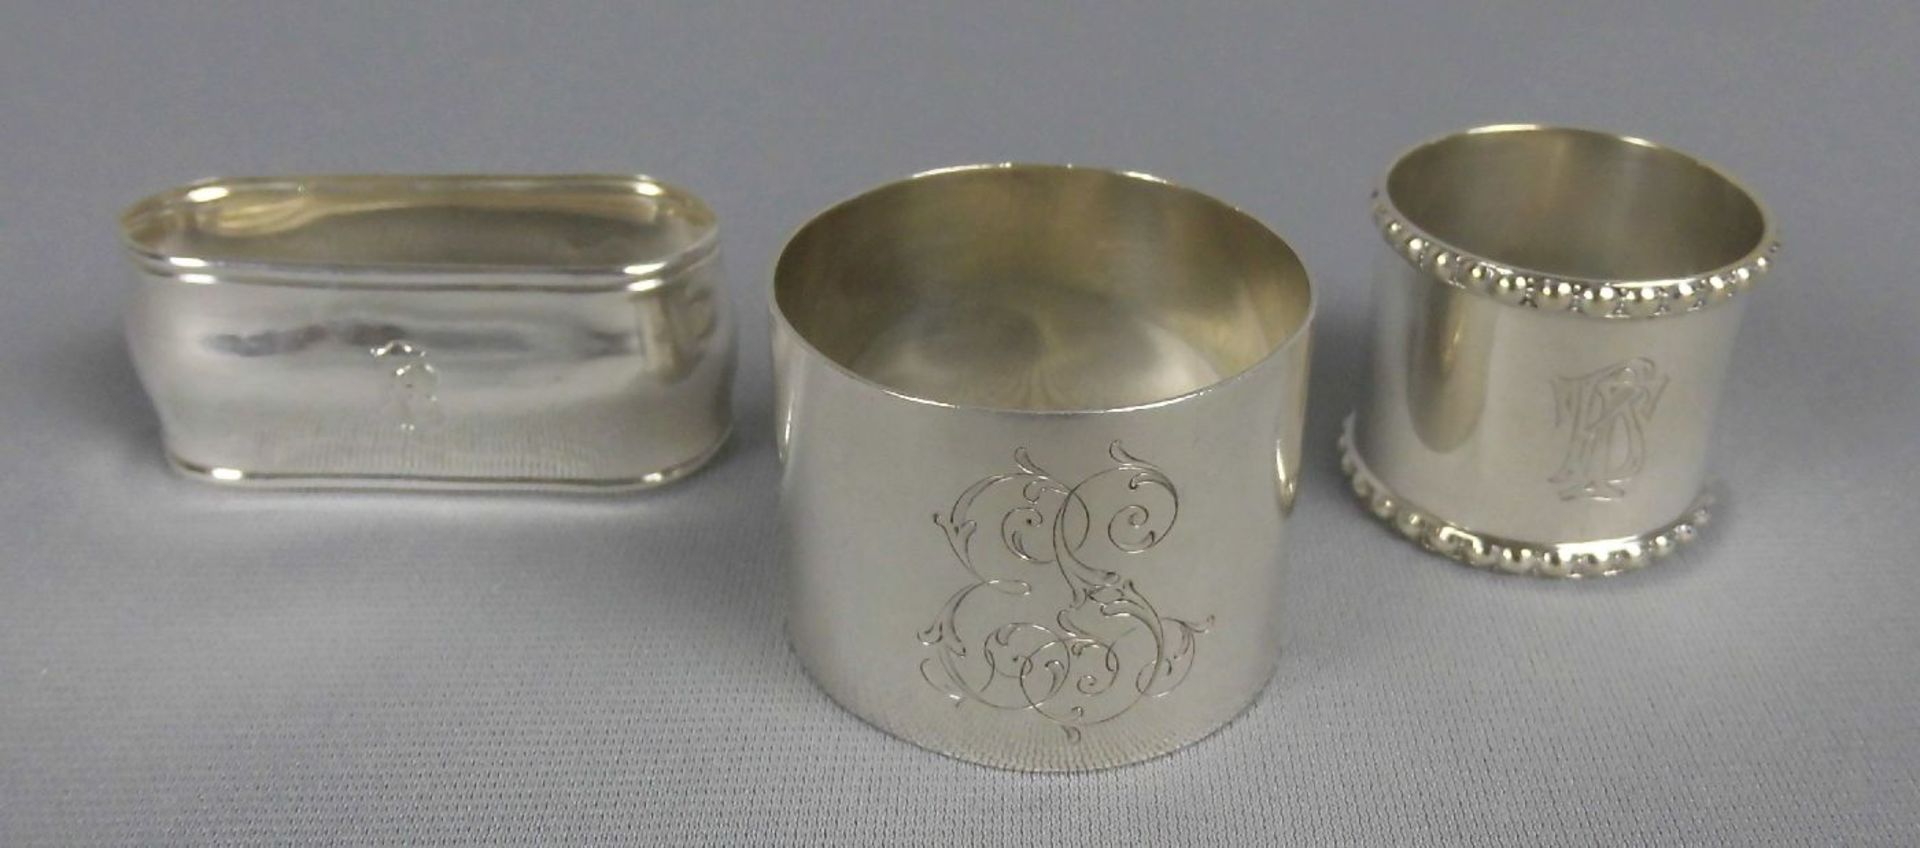 3 SERVIETTENRINGE / napkin rings, unterschiedlicher Form und Größe, 800er und 835er Silber (